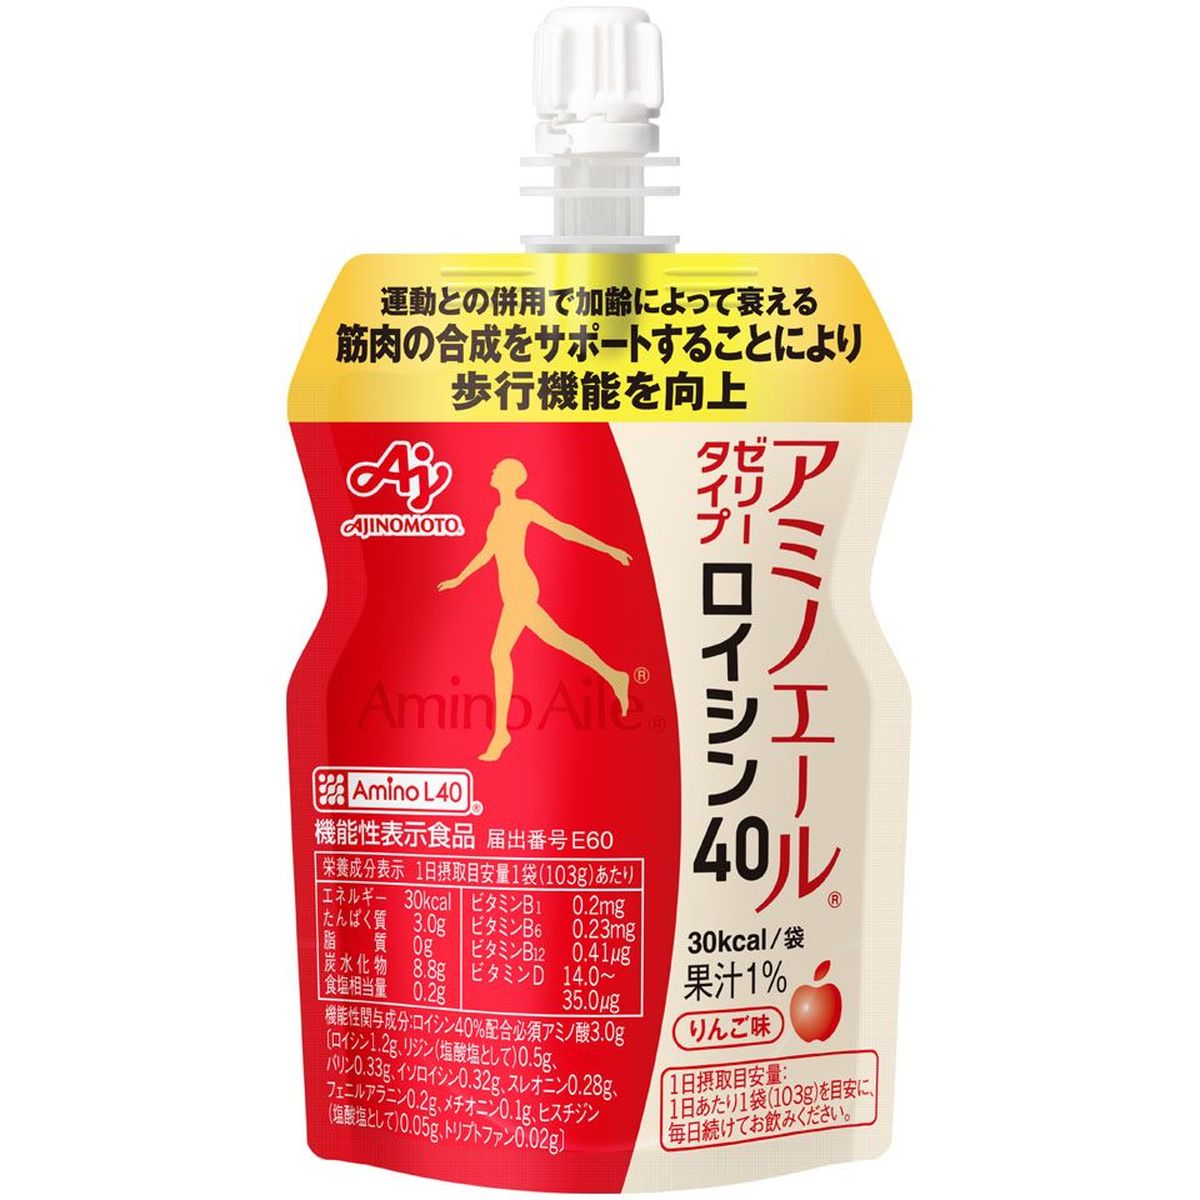 【6個入リ】味ノ素 アミノエール ゼリータイプ ロイシン40 103g